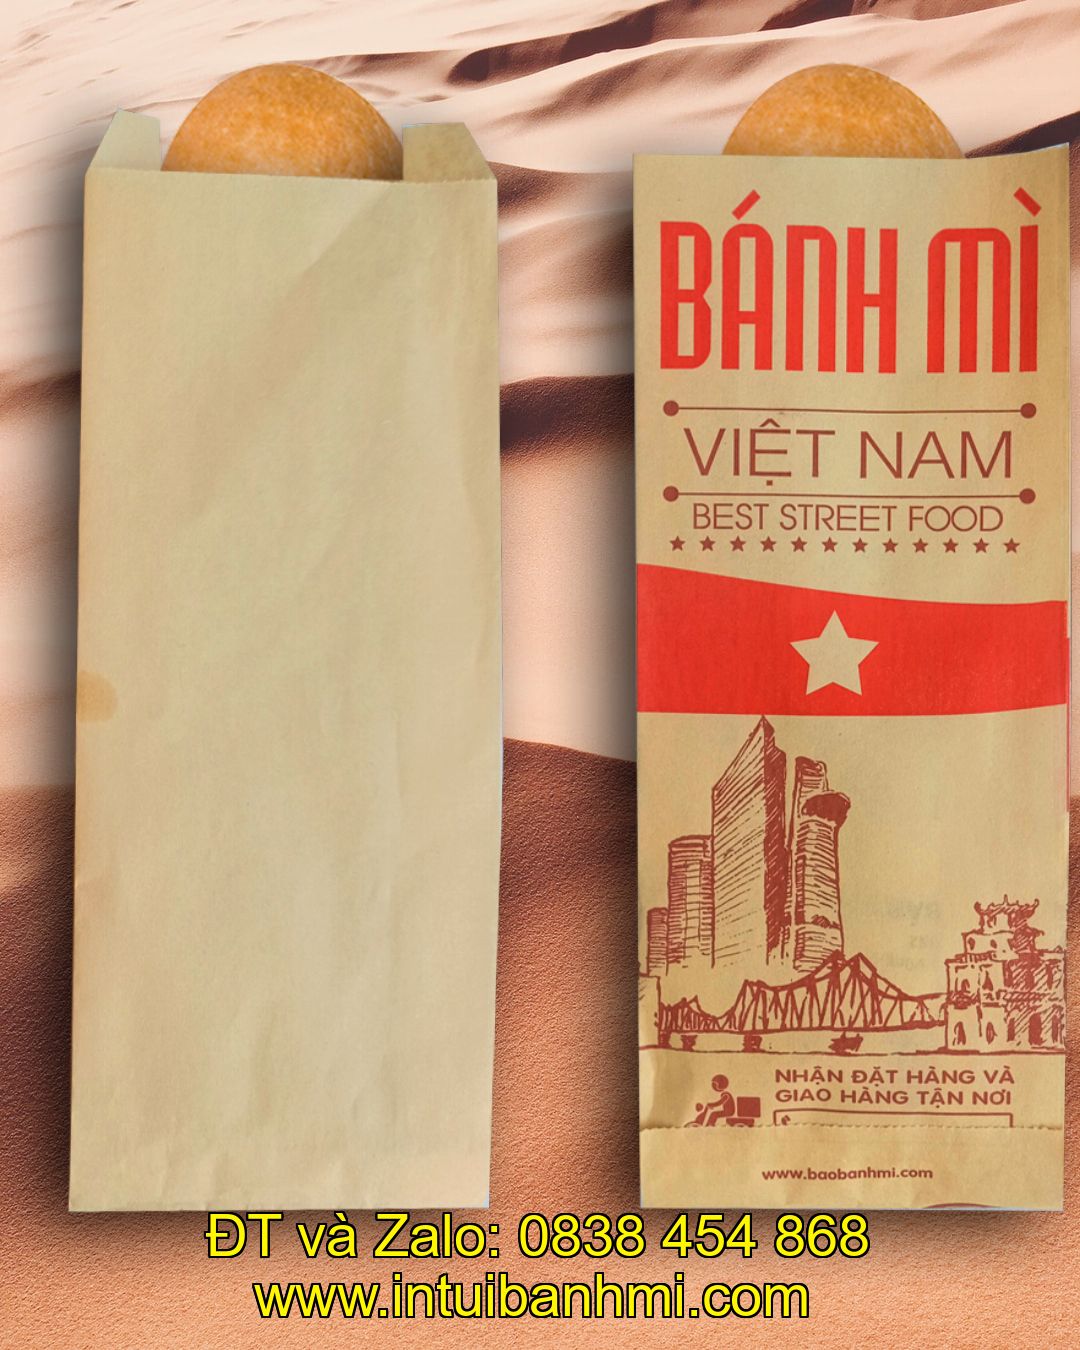 Vai trò của các loại túi bánh mì được làm bằng giấy trong cuộc sống hiện đại